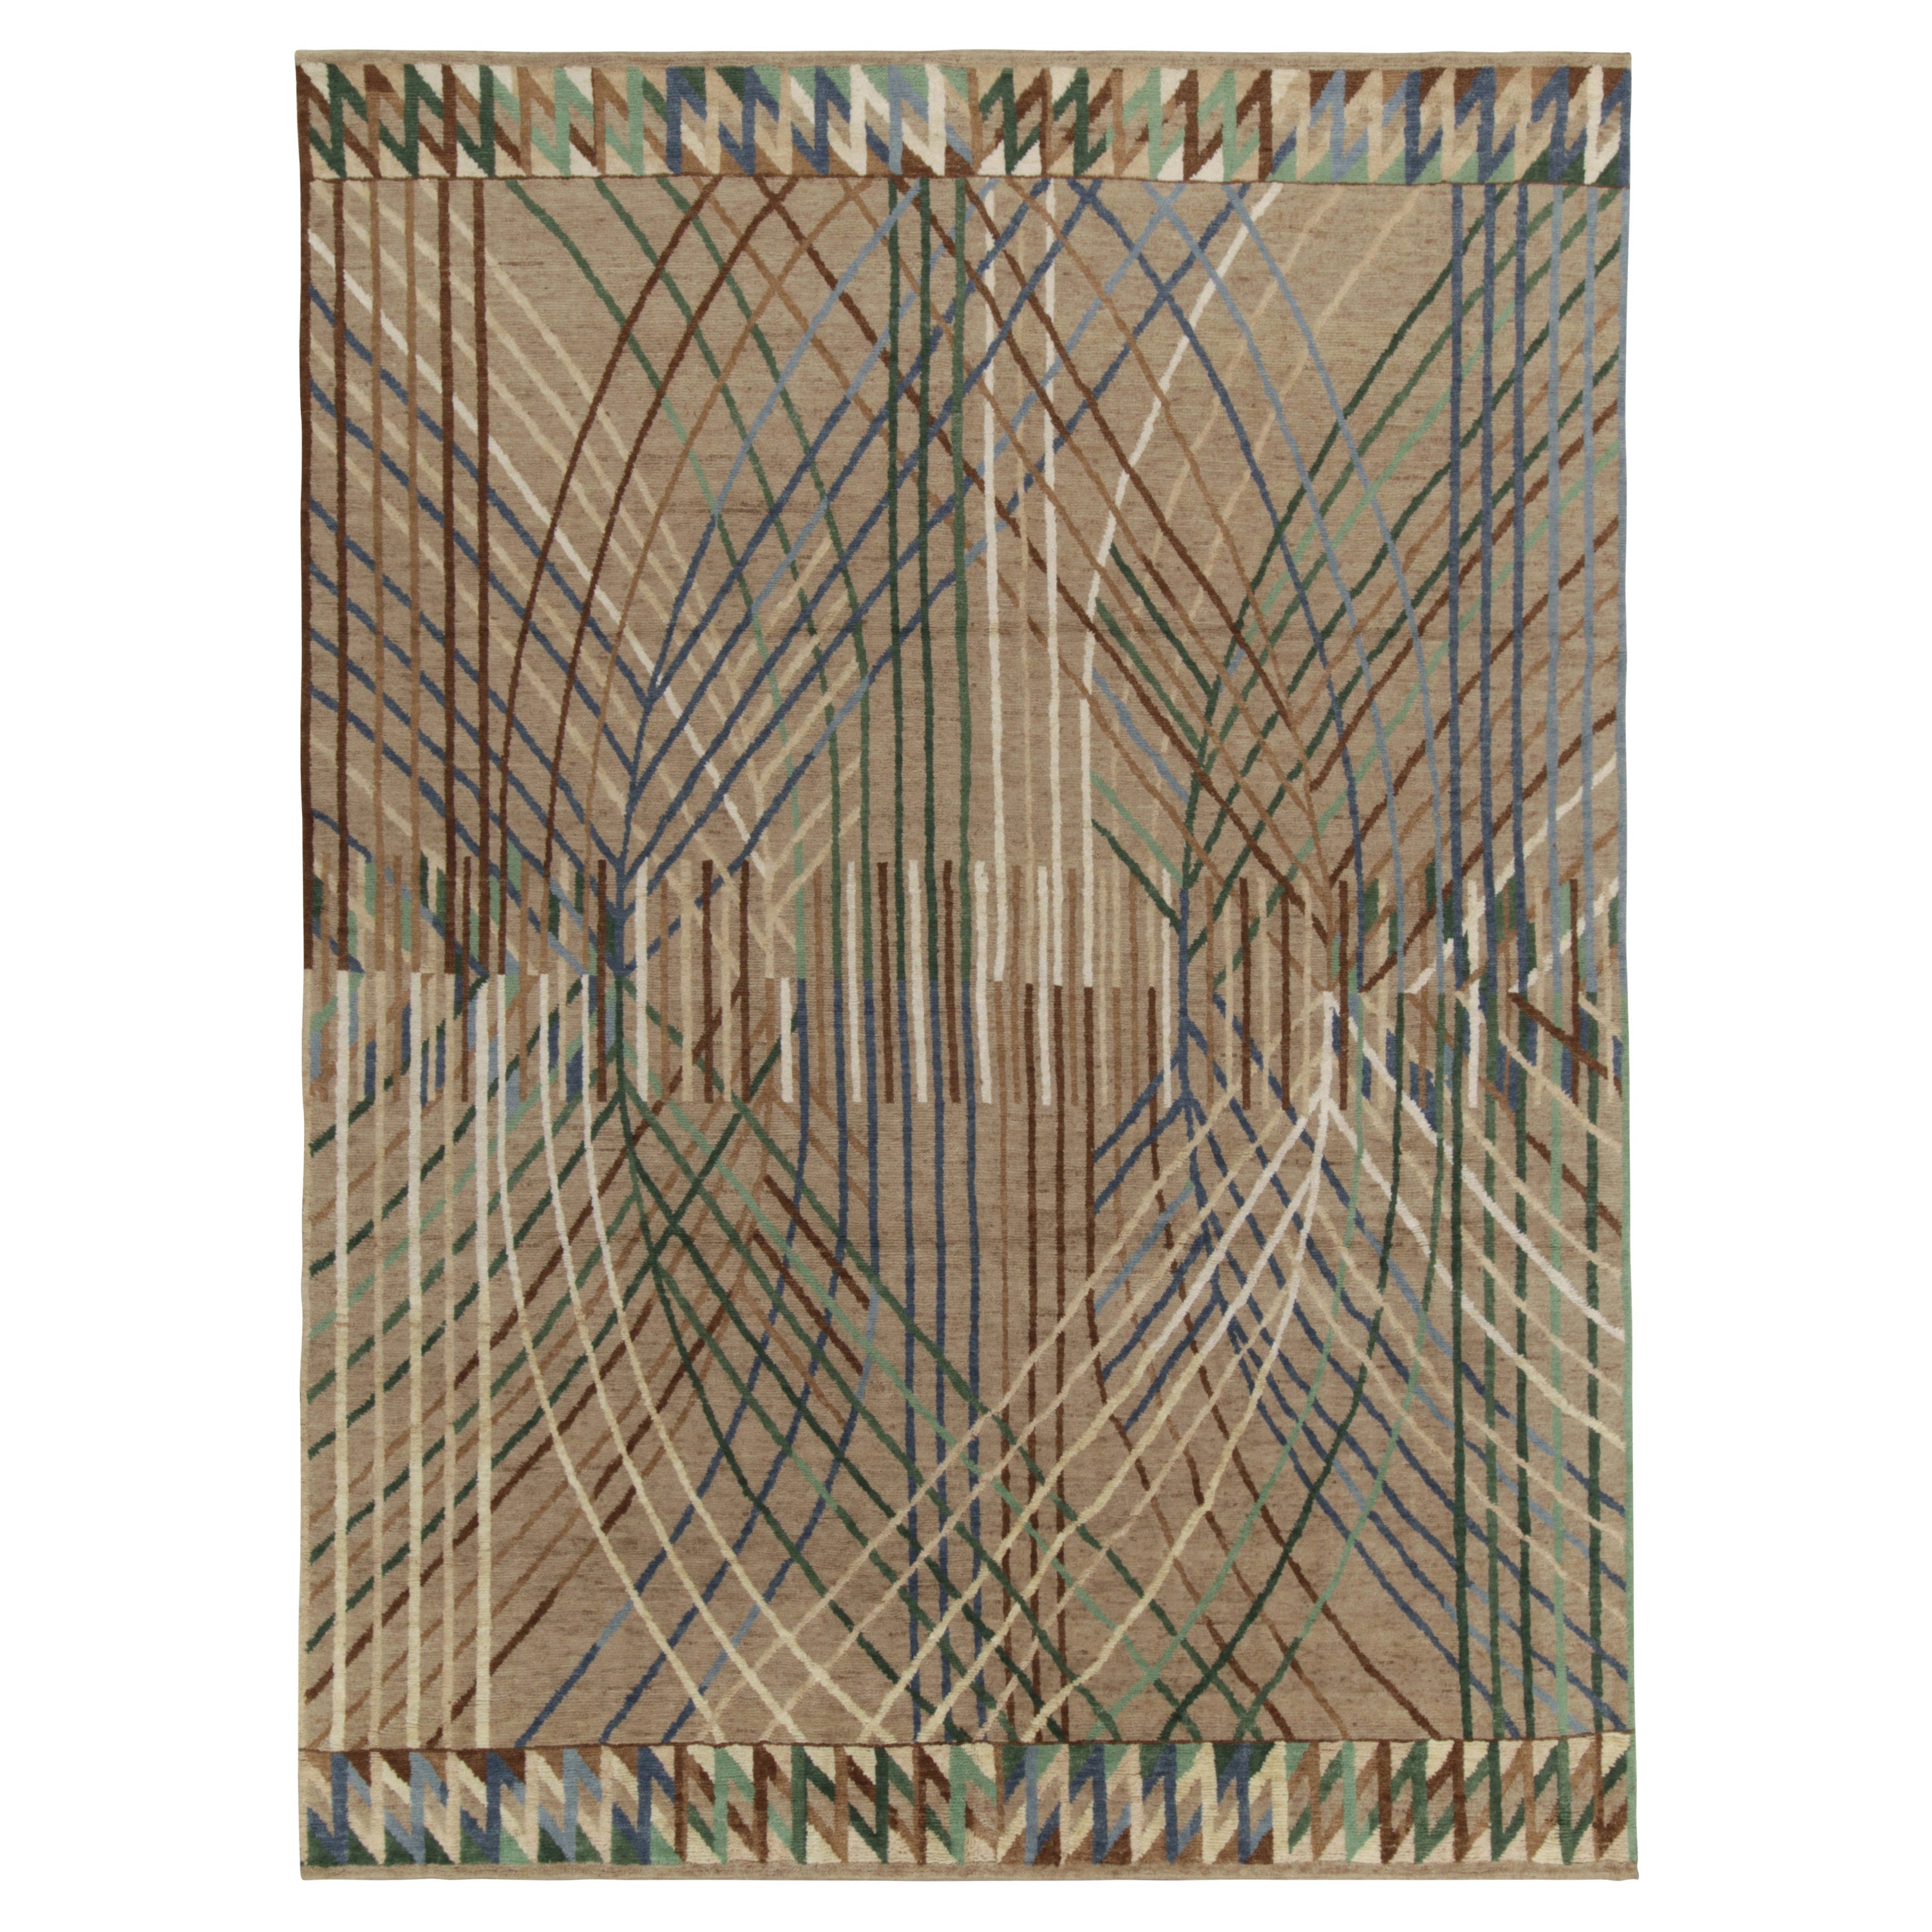 Schwedischer Teppich im Deko-Stil von Teppich & Kilims in Beige-Braun mit mehrfarbiger Geometrie